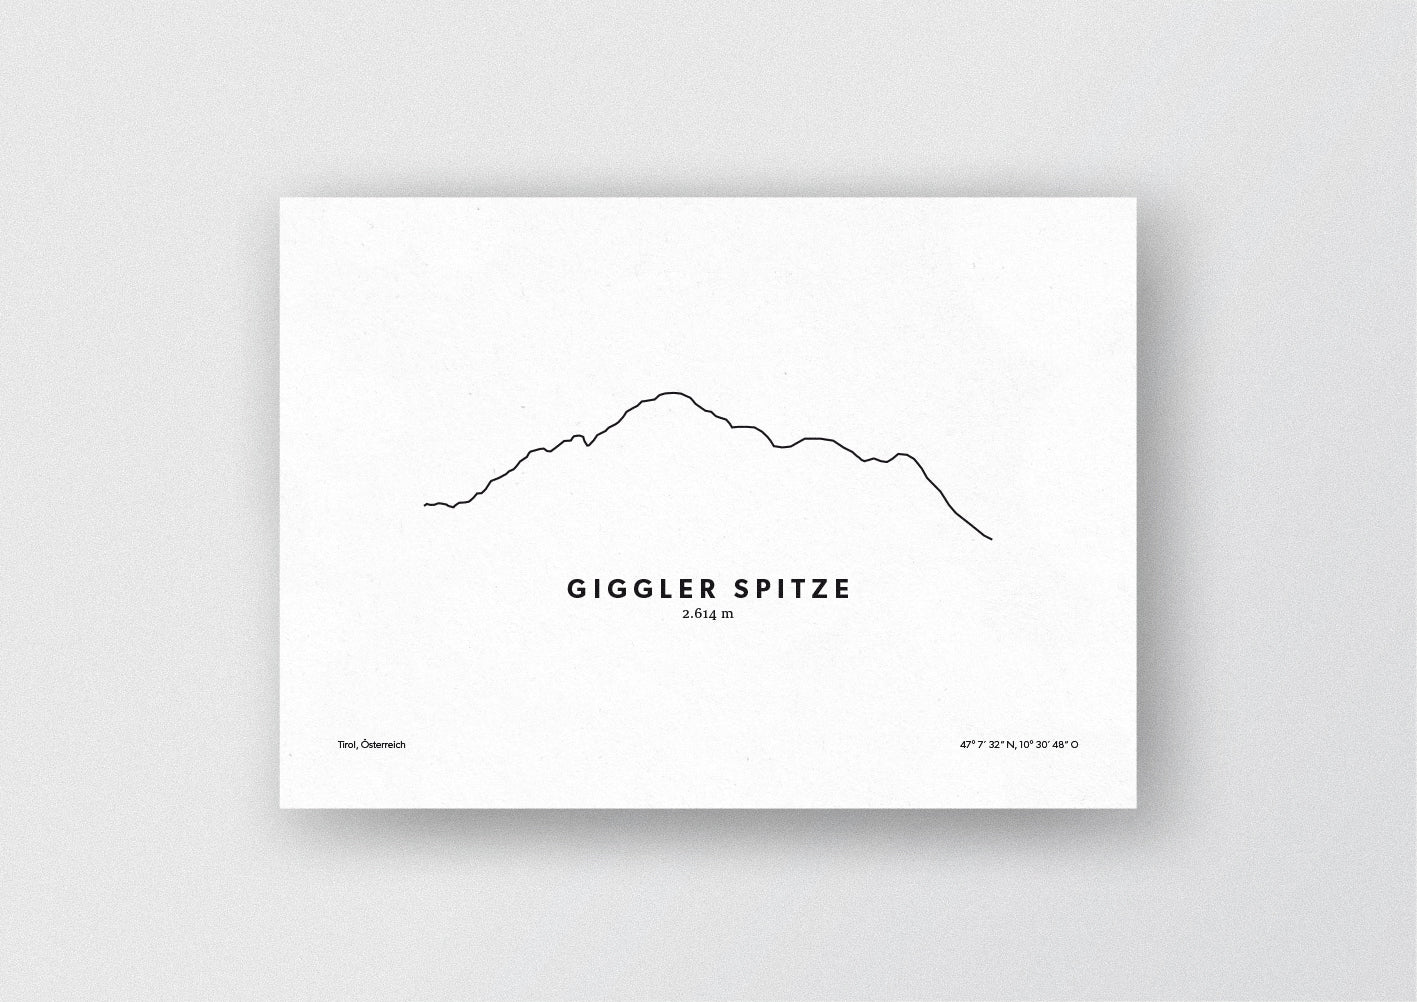 Minimalistische Illustration der Giggler Spitze in der Region Landeck in Tirol, als stilvoller Einrichtungsgegenstand für Zuhause.